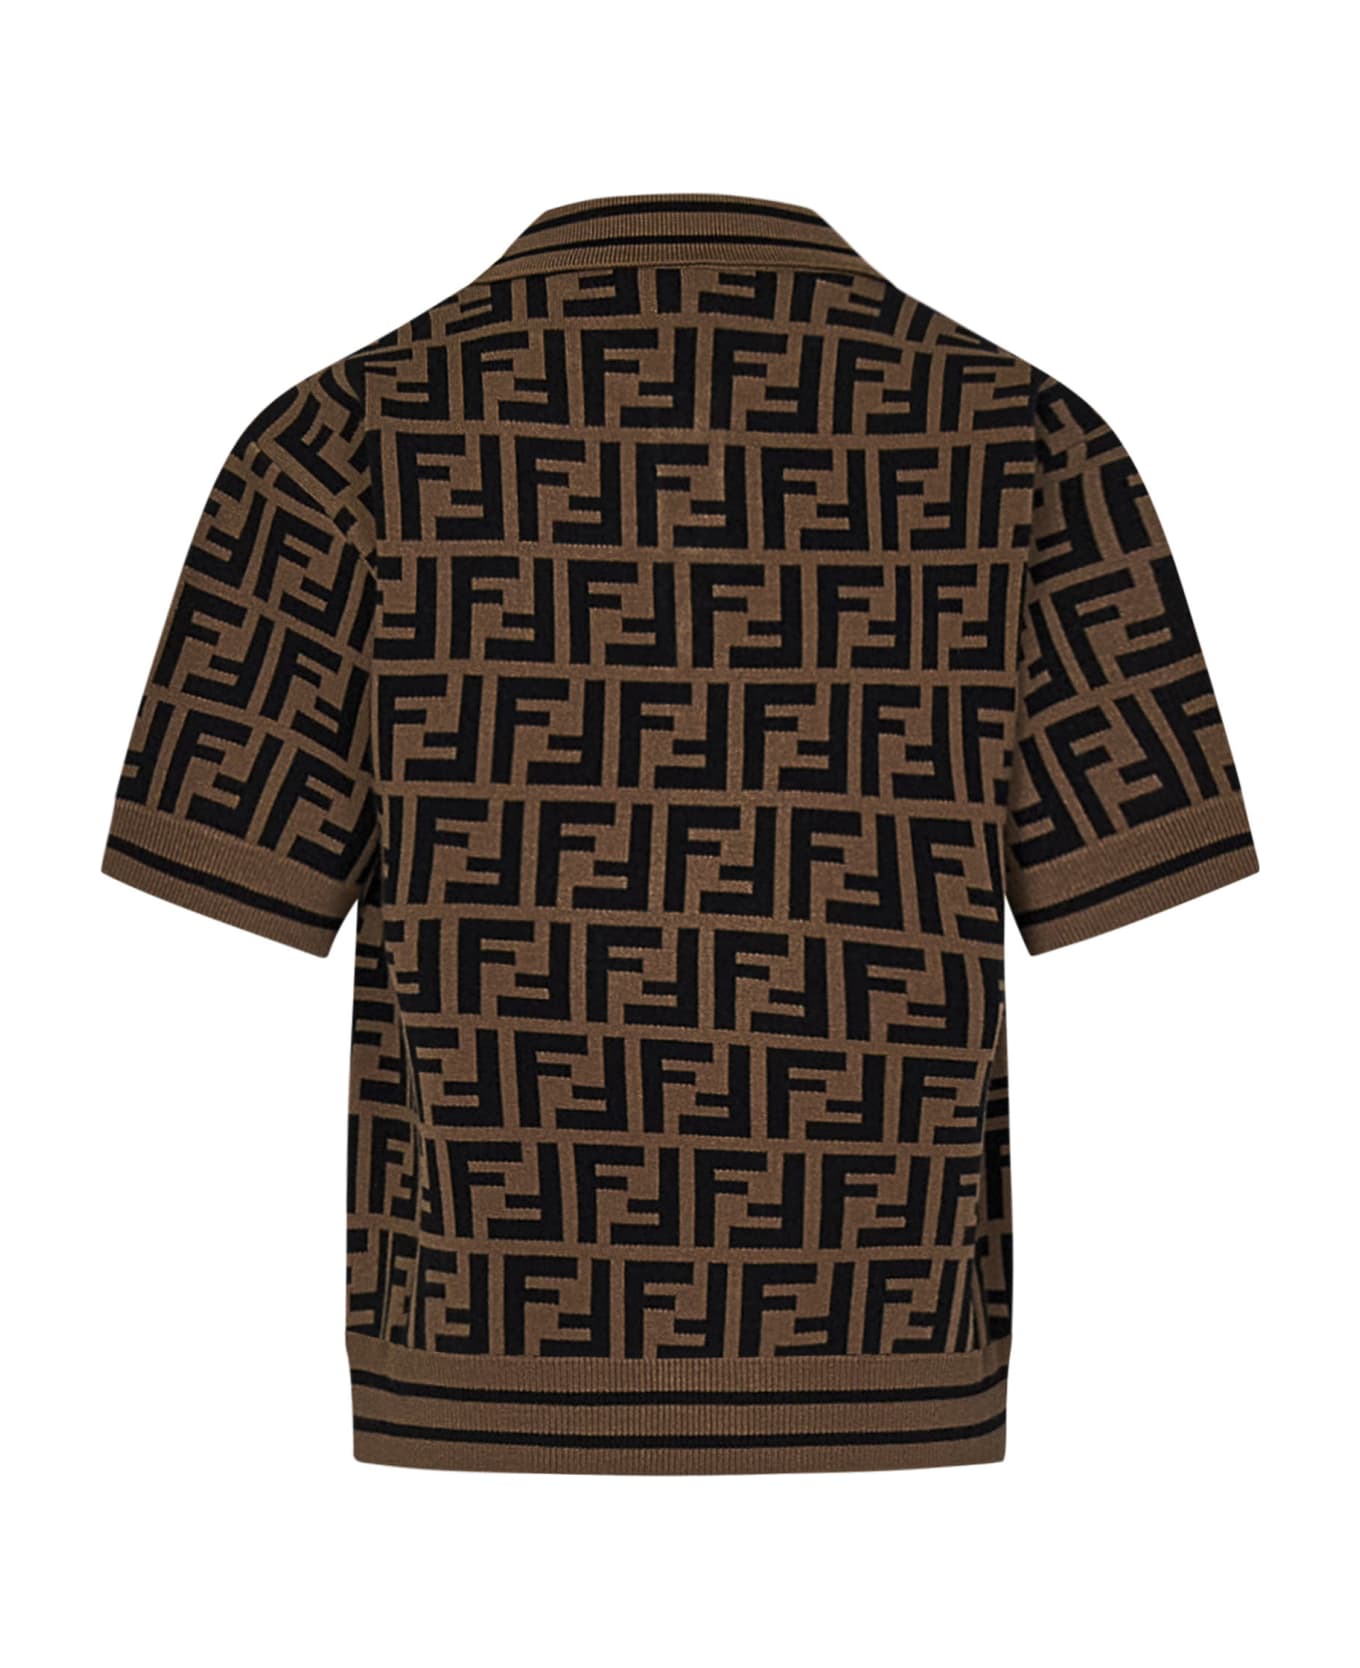 Fendi Polo Shirt - Brown